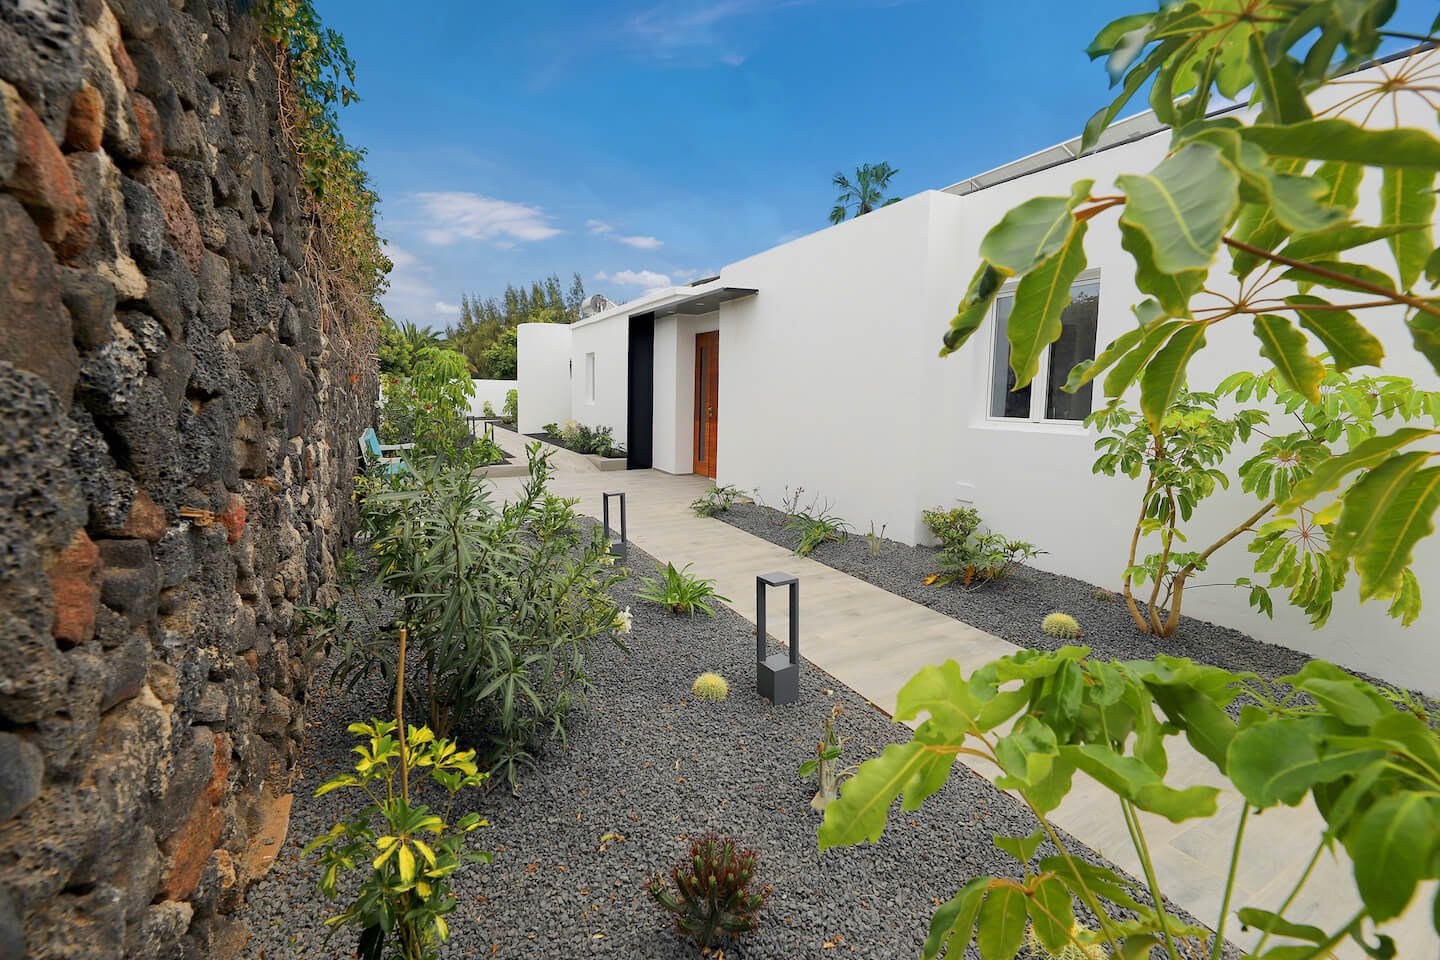 Casa El Paraiso - Puerto del Carmen - Lanzarote - Expansive Gardens